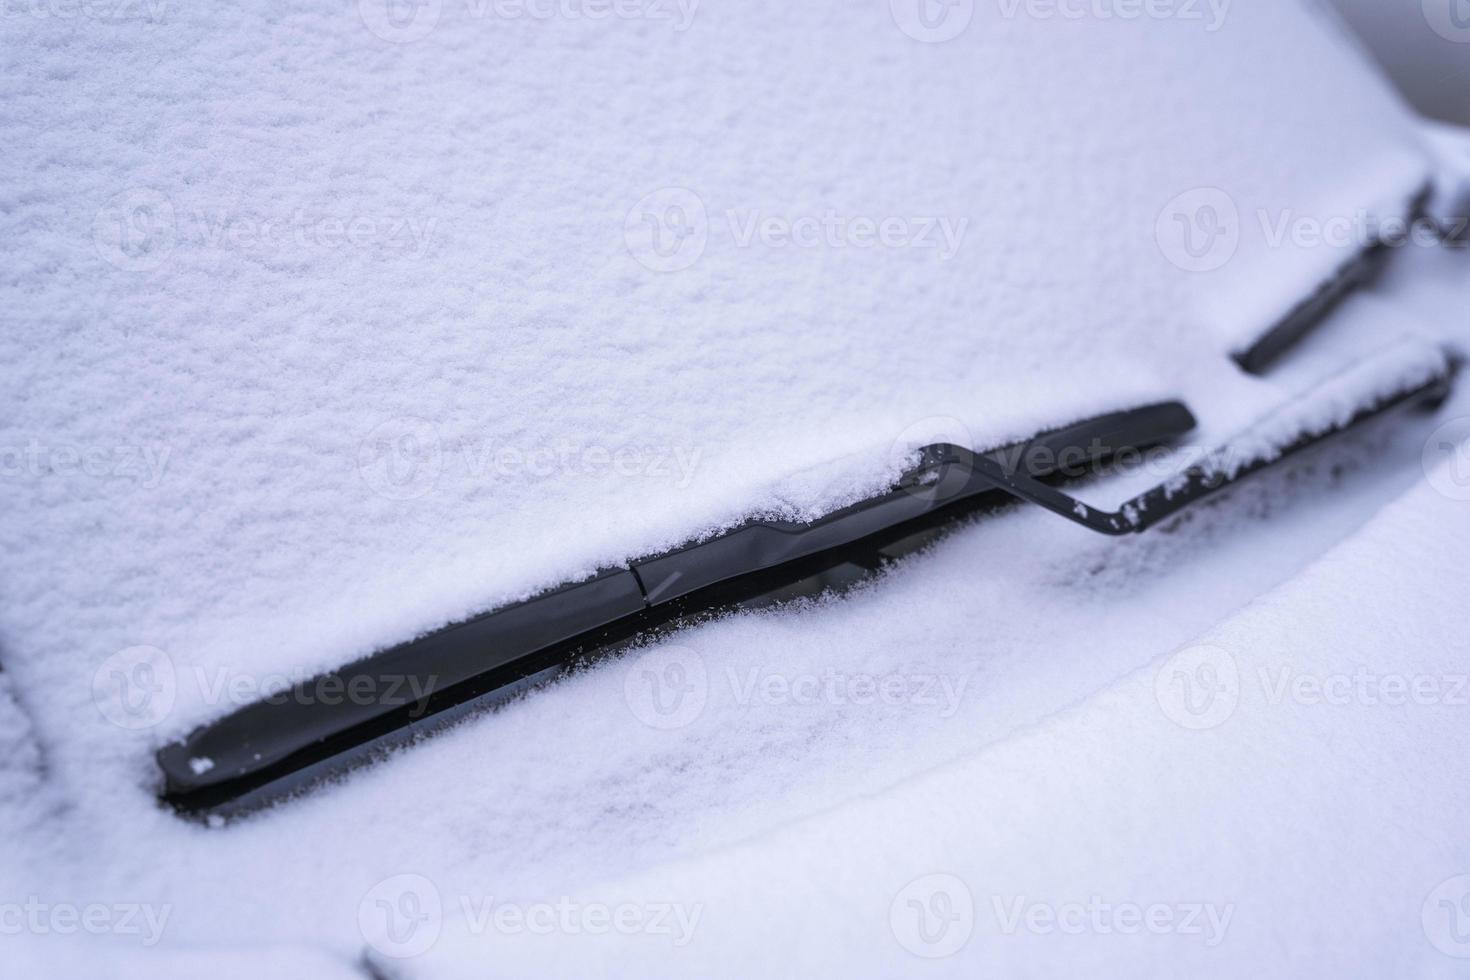 couvert de neige voiture pare-brise, essuie-glace lame dans duveteux premier neige photo